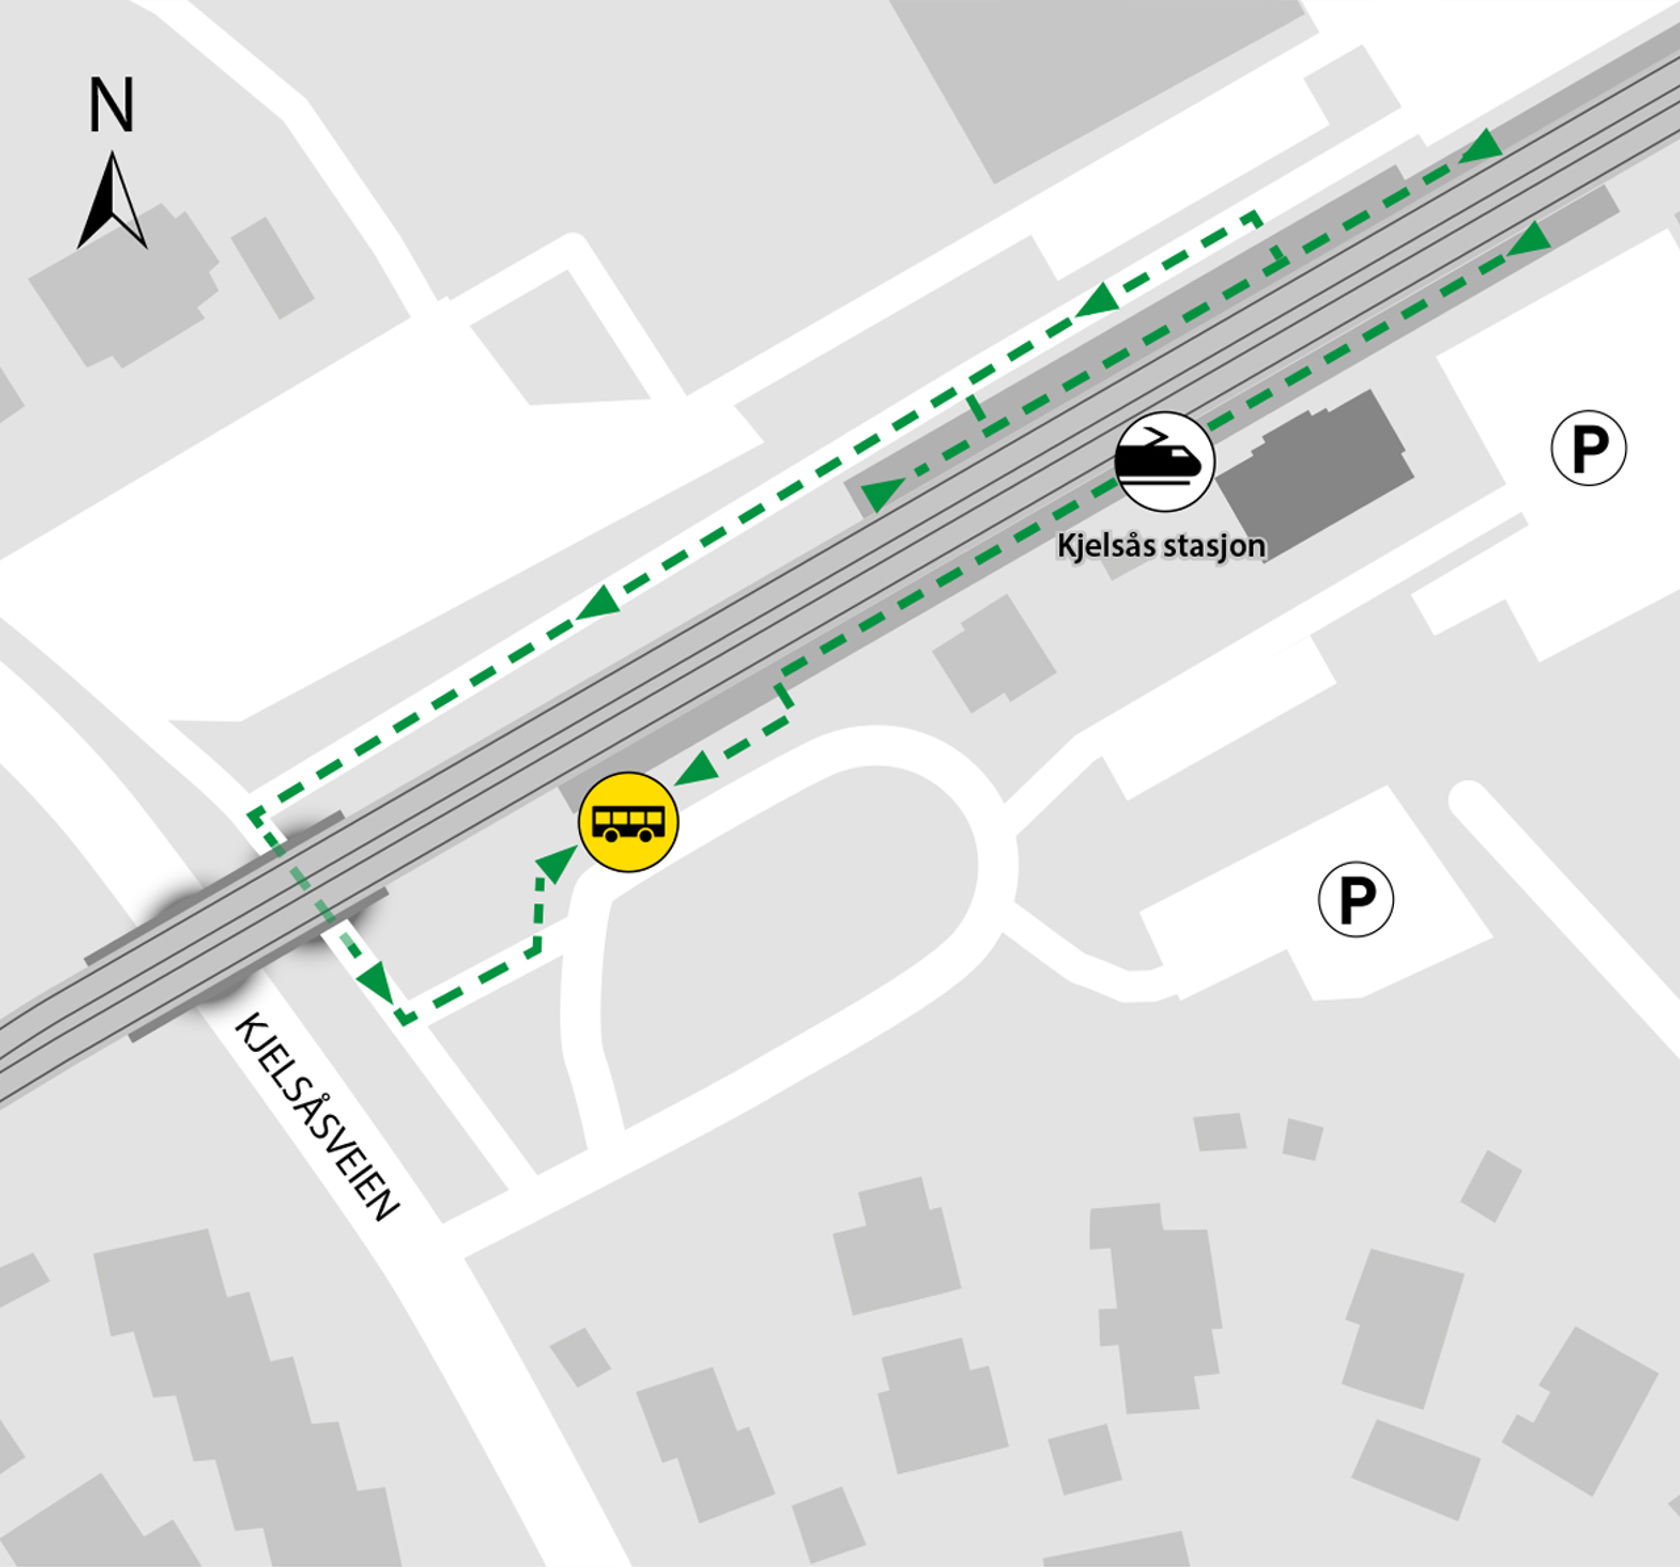 Kartet viser at bussene kjører fra bussholdeplassen Kjelsås stasjon.